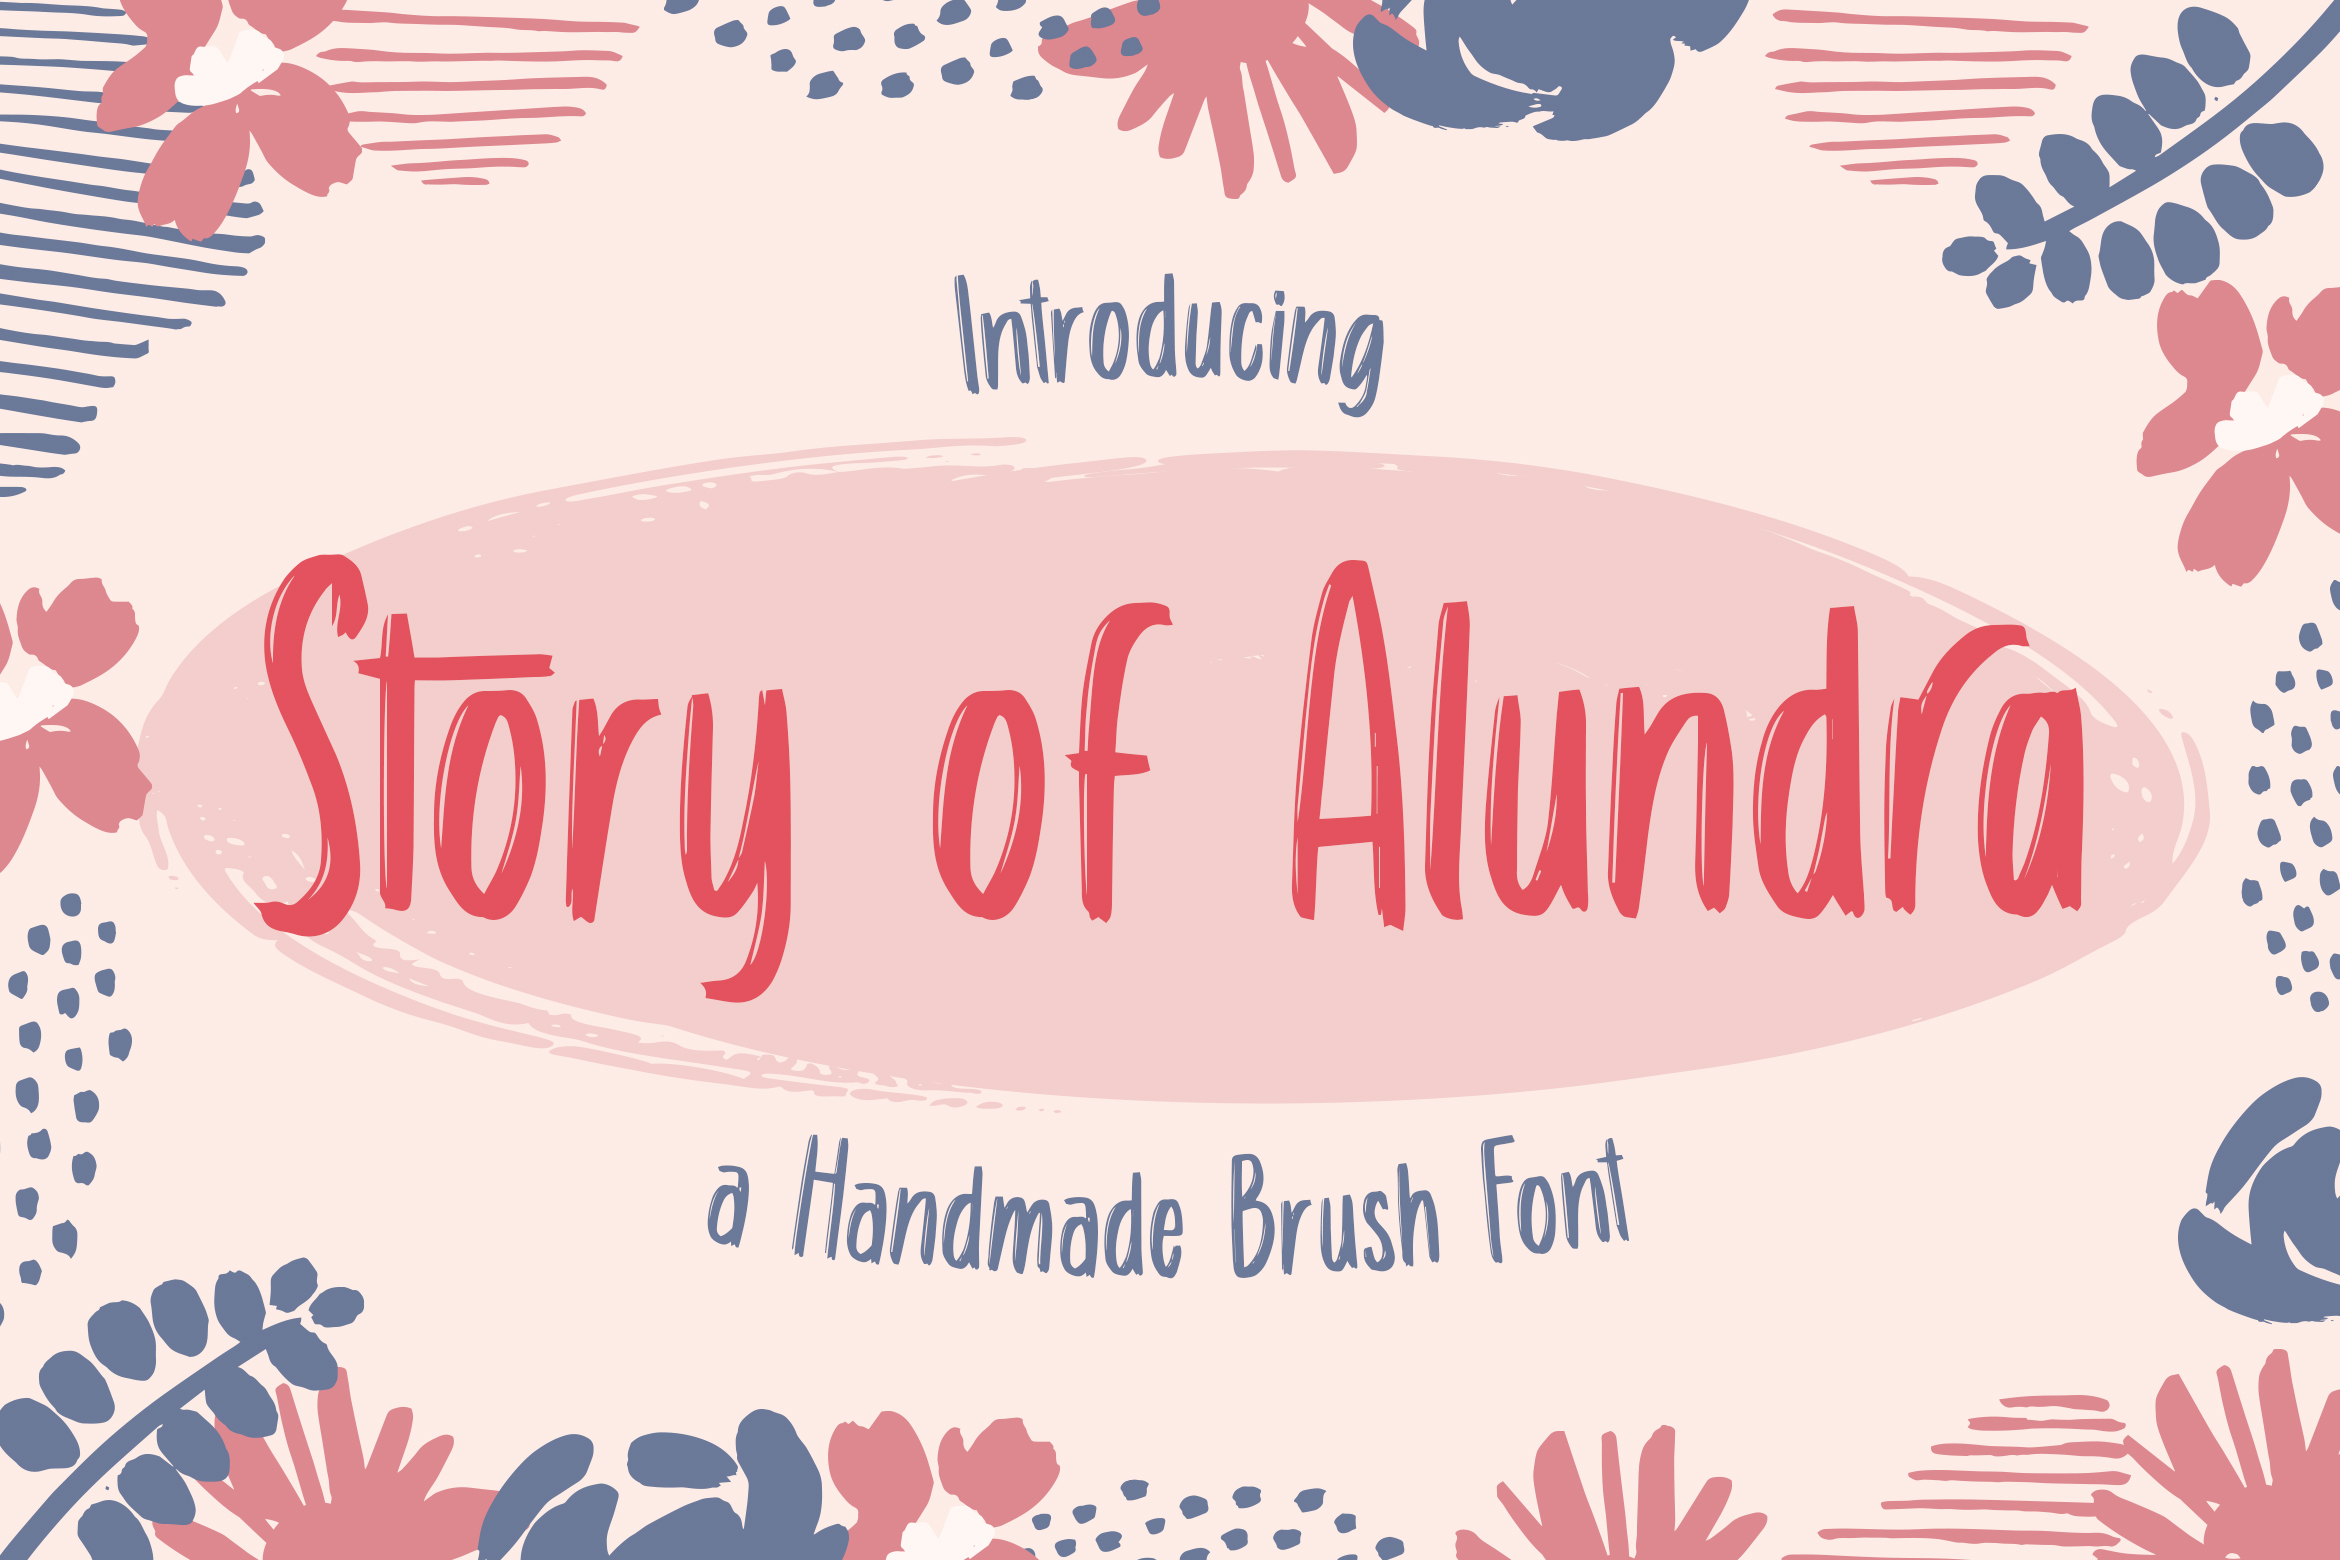 Story of Alundra